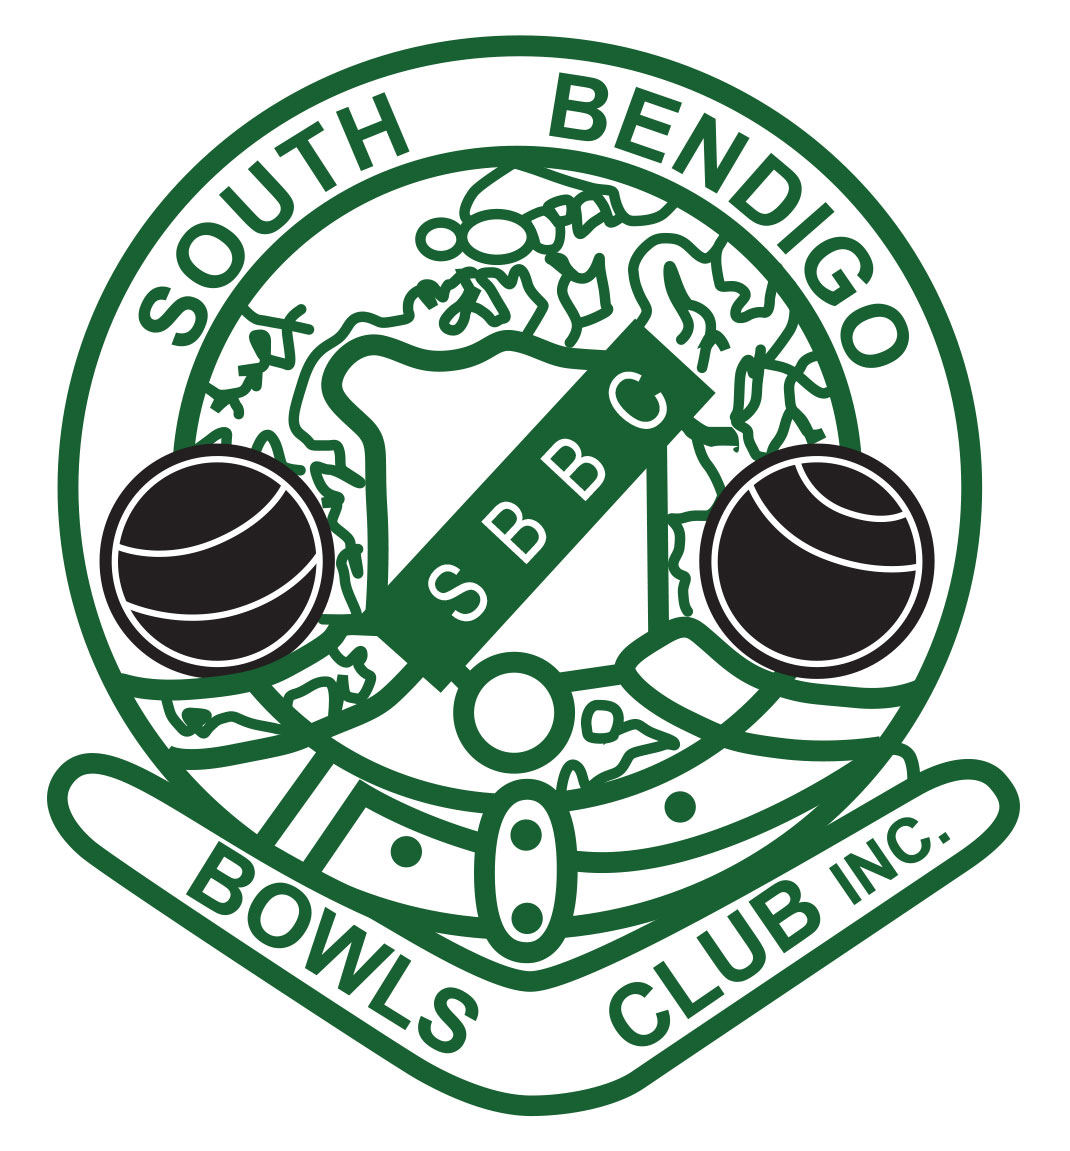 South Bendigo Bowls Club